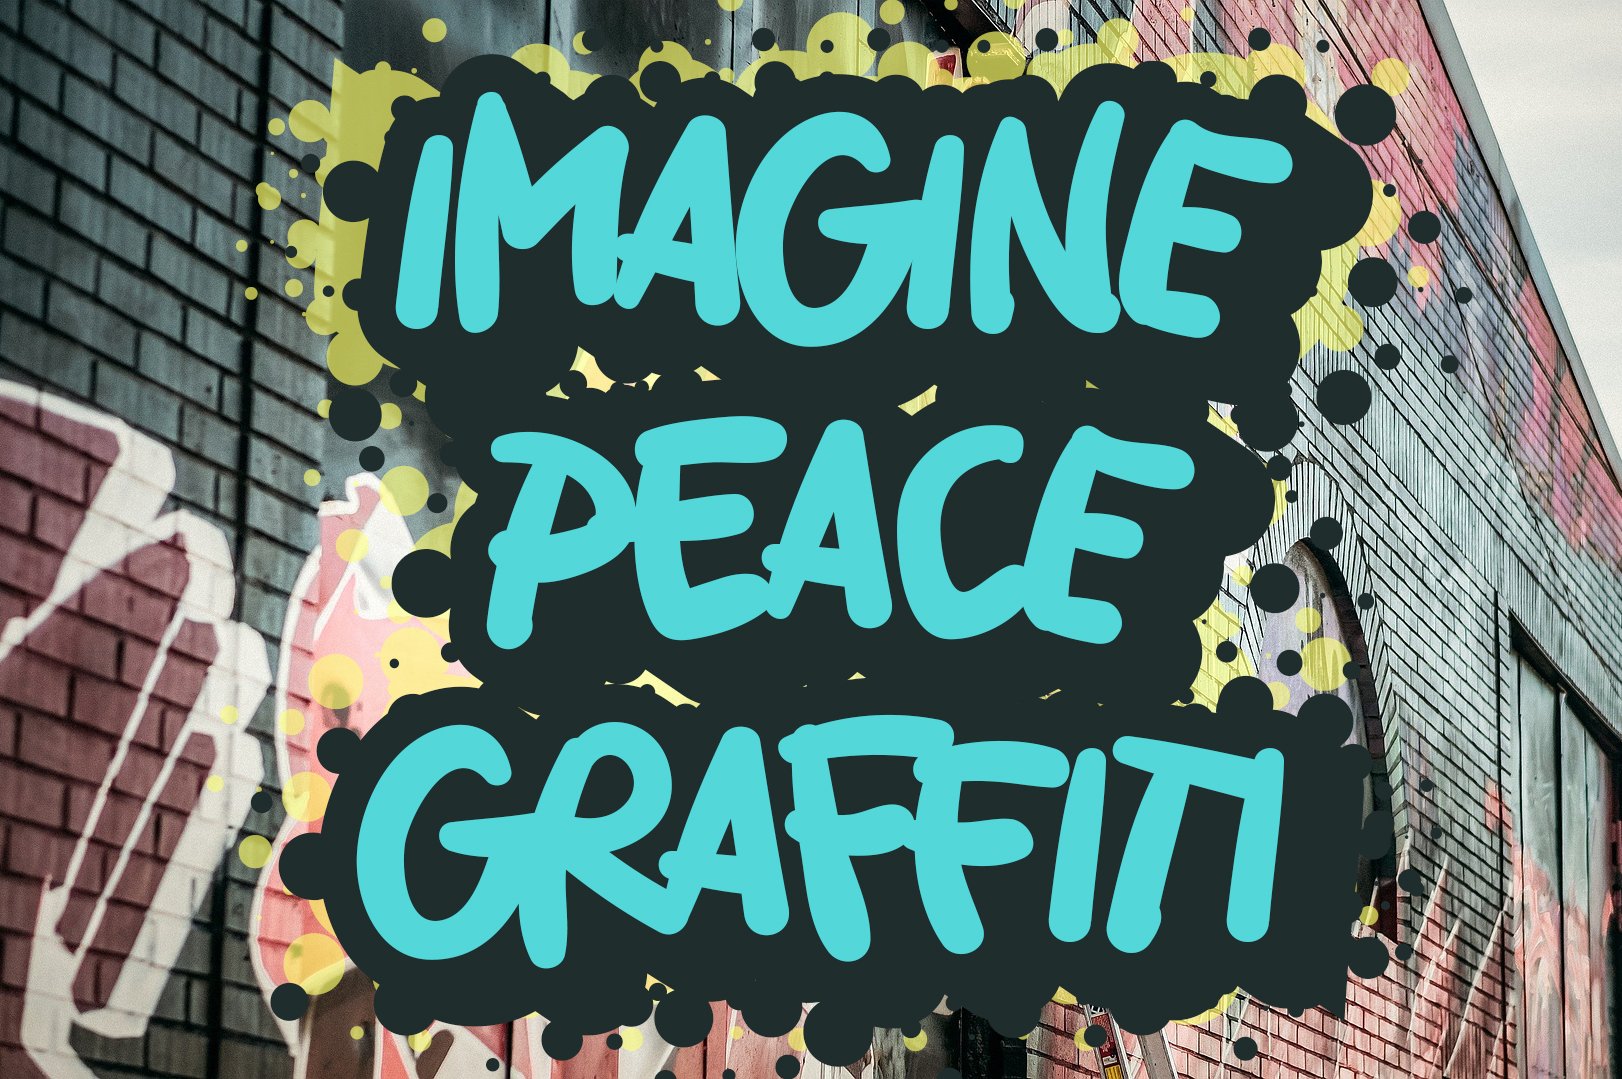 Imagine Peace Graffiti preview image.